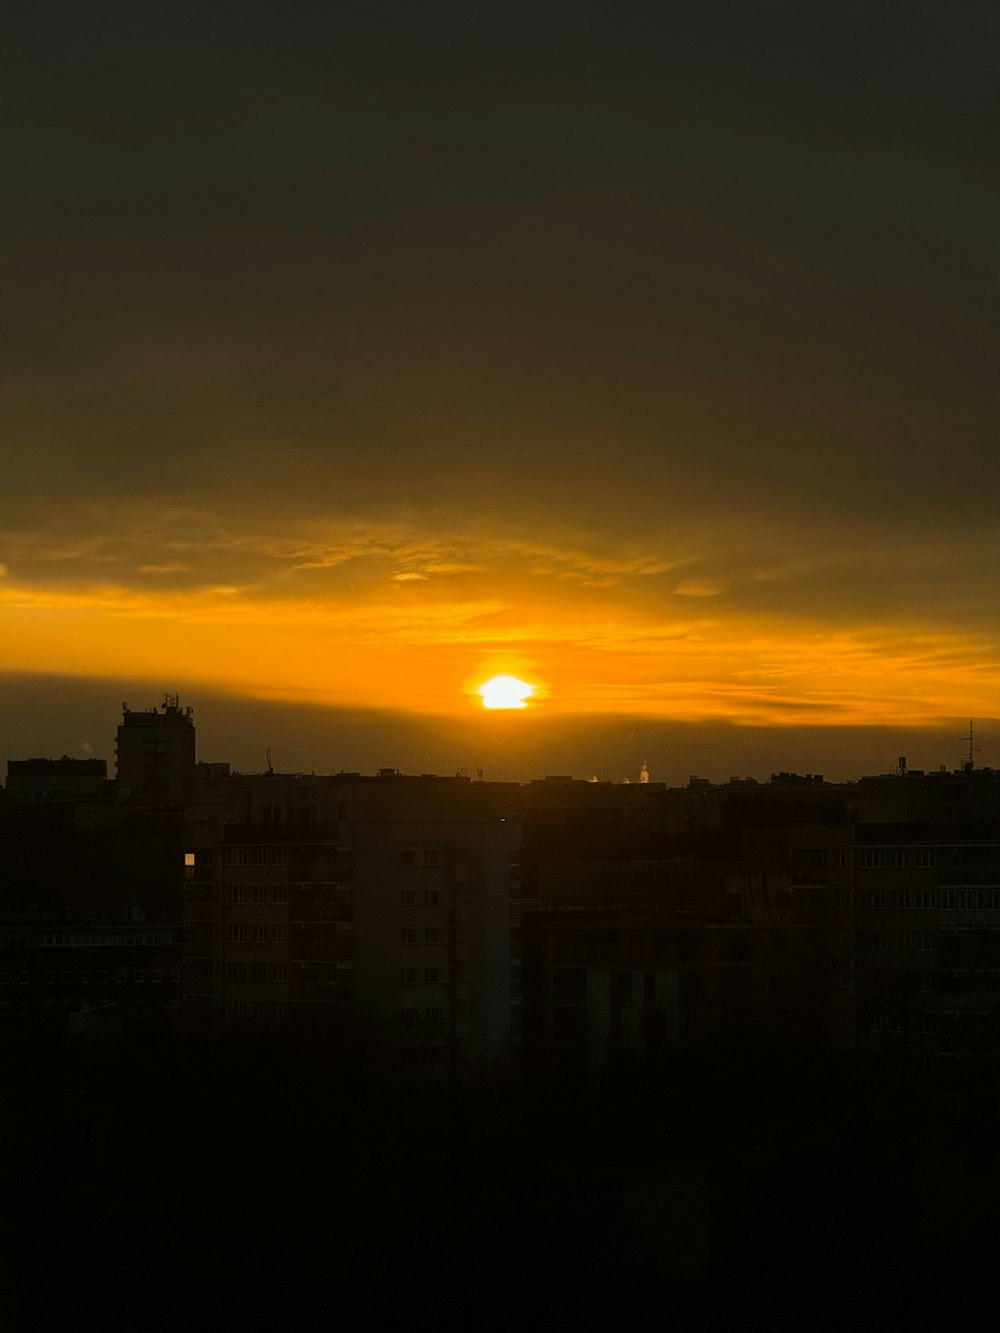 Le soleil se couche sur une ville aux grands immeubles